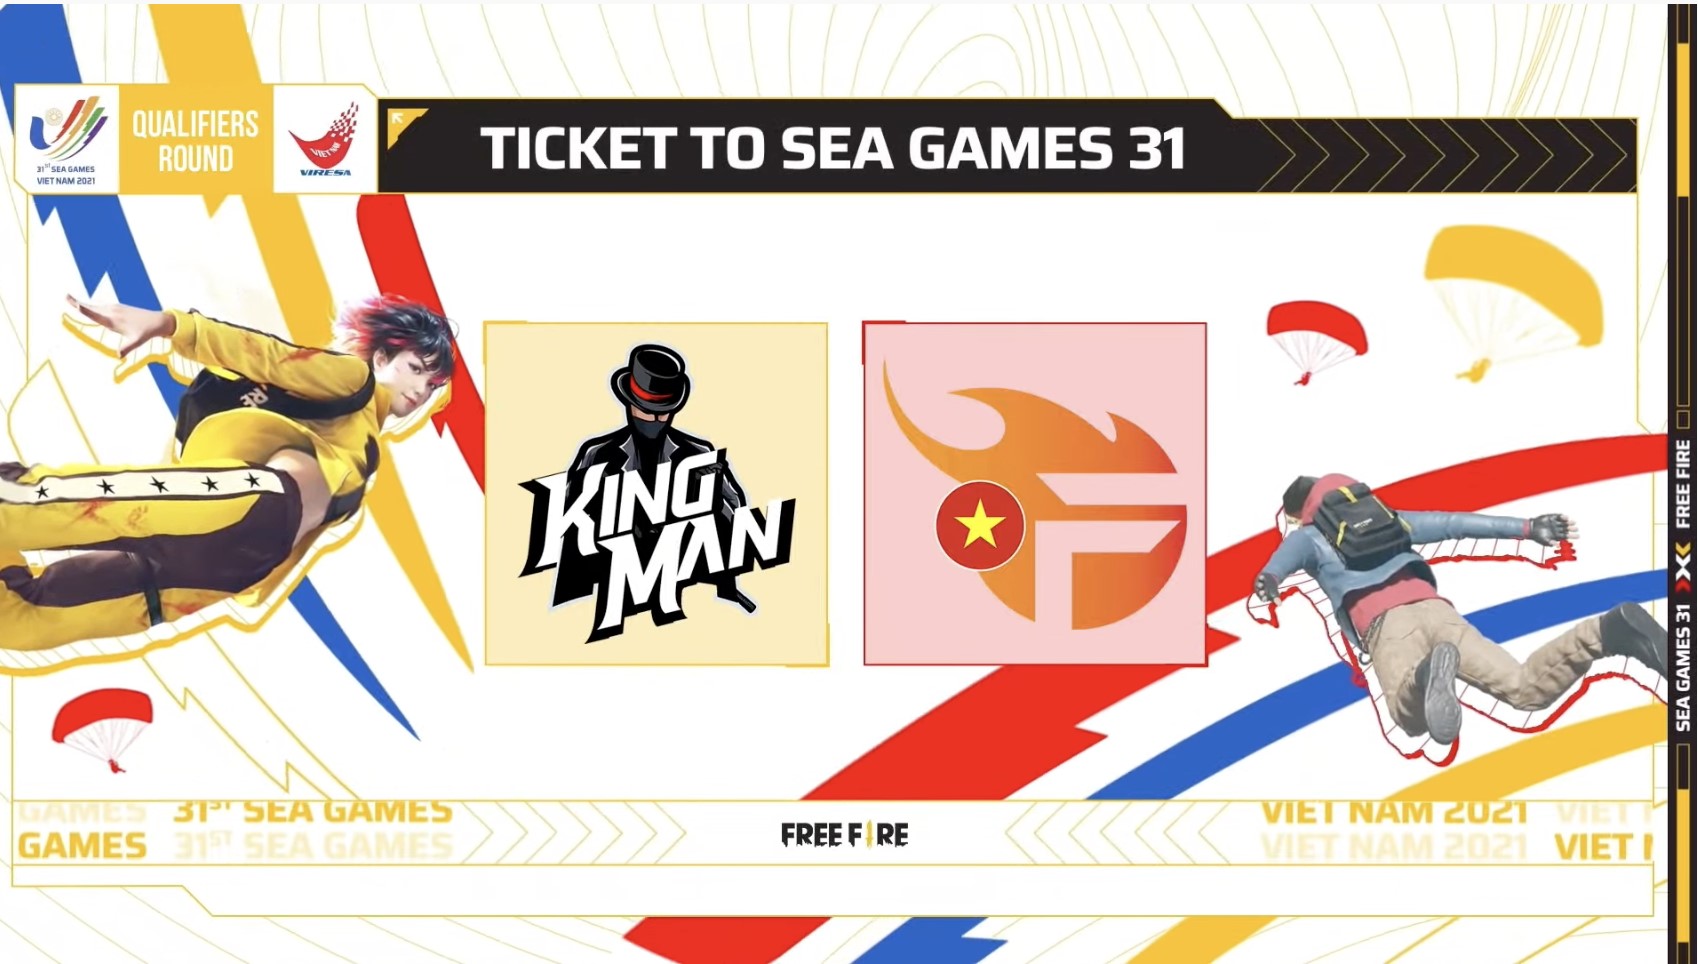 Free Fire công bố 2 đội tuyển đại diện Việt Nam tham dự SEA Games 31 - Ảnh 1